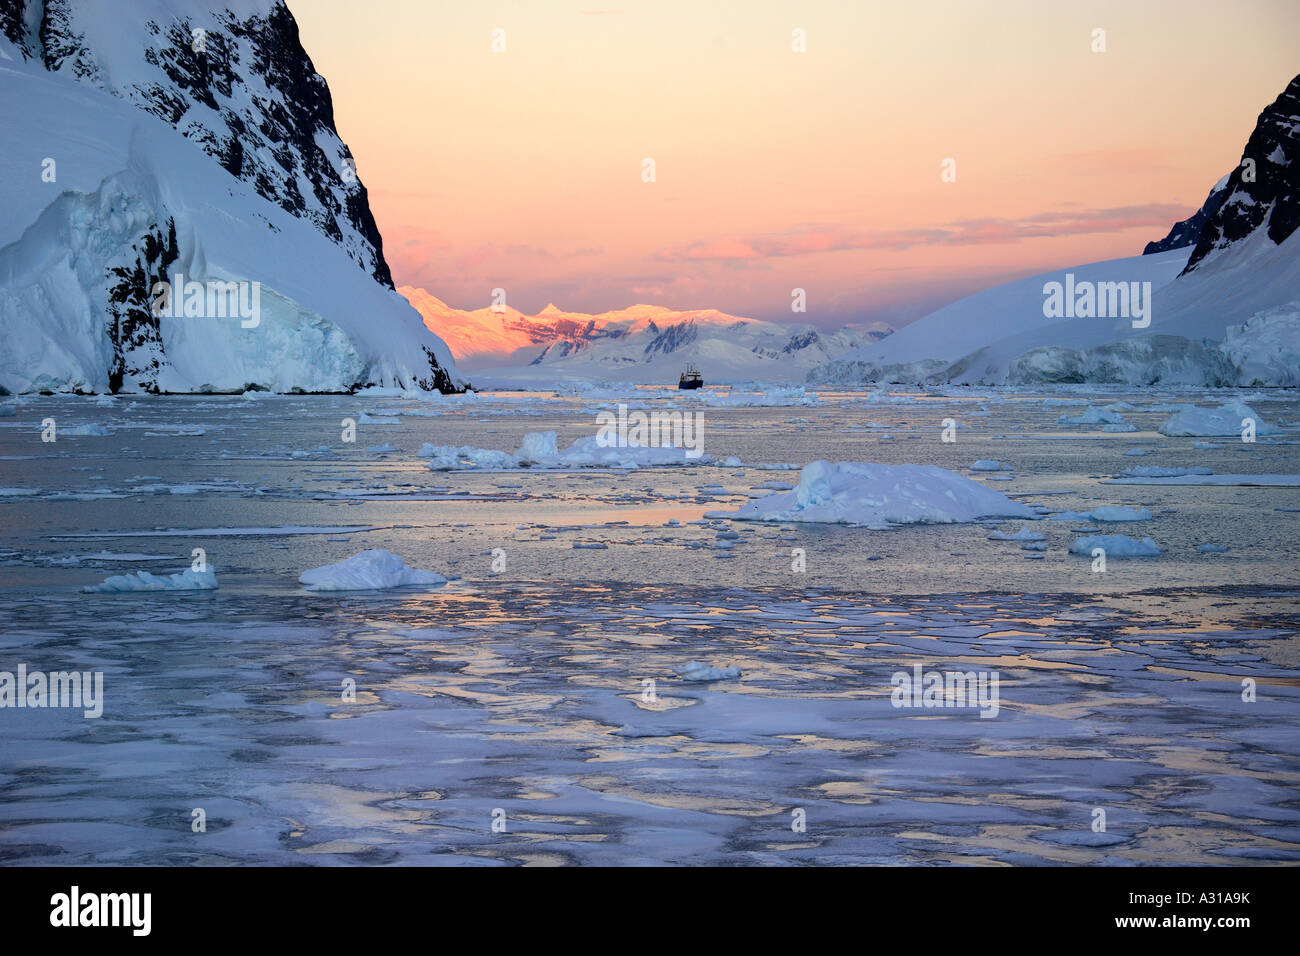 Soleil de minuit couleurs rose les sommets des montagnes à 2h00 dans le canal de Lamairé sur la péninsule Antarctique dans l'Antarctique Banque D'Images